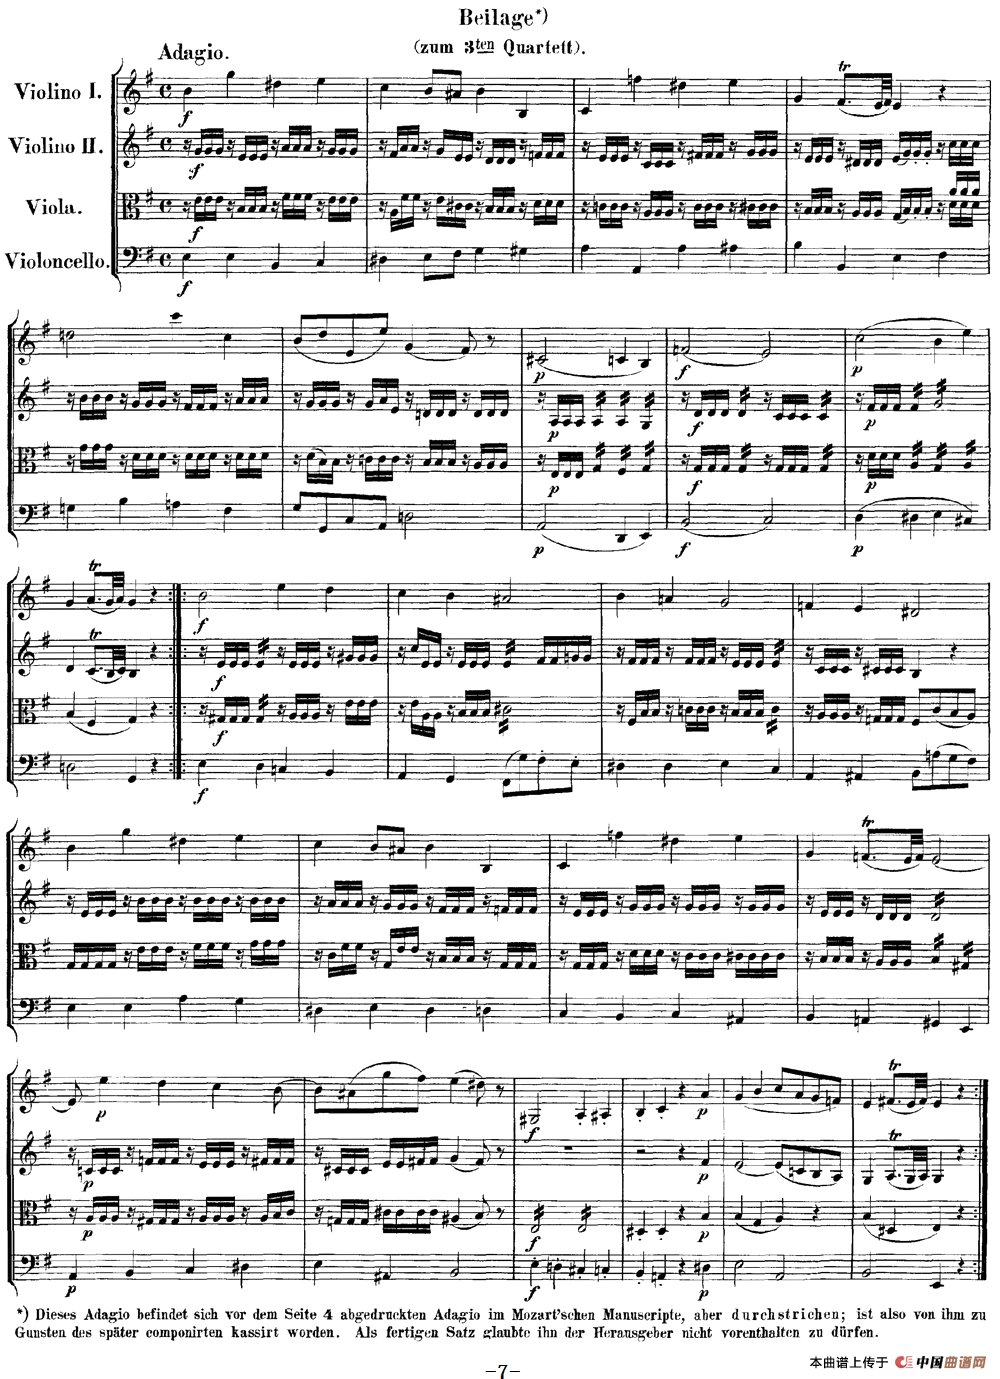 Mozart《Quartet No.3 in G Major,K.156》（总谱）